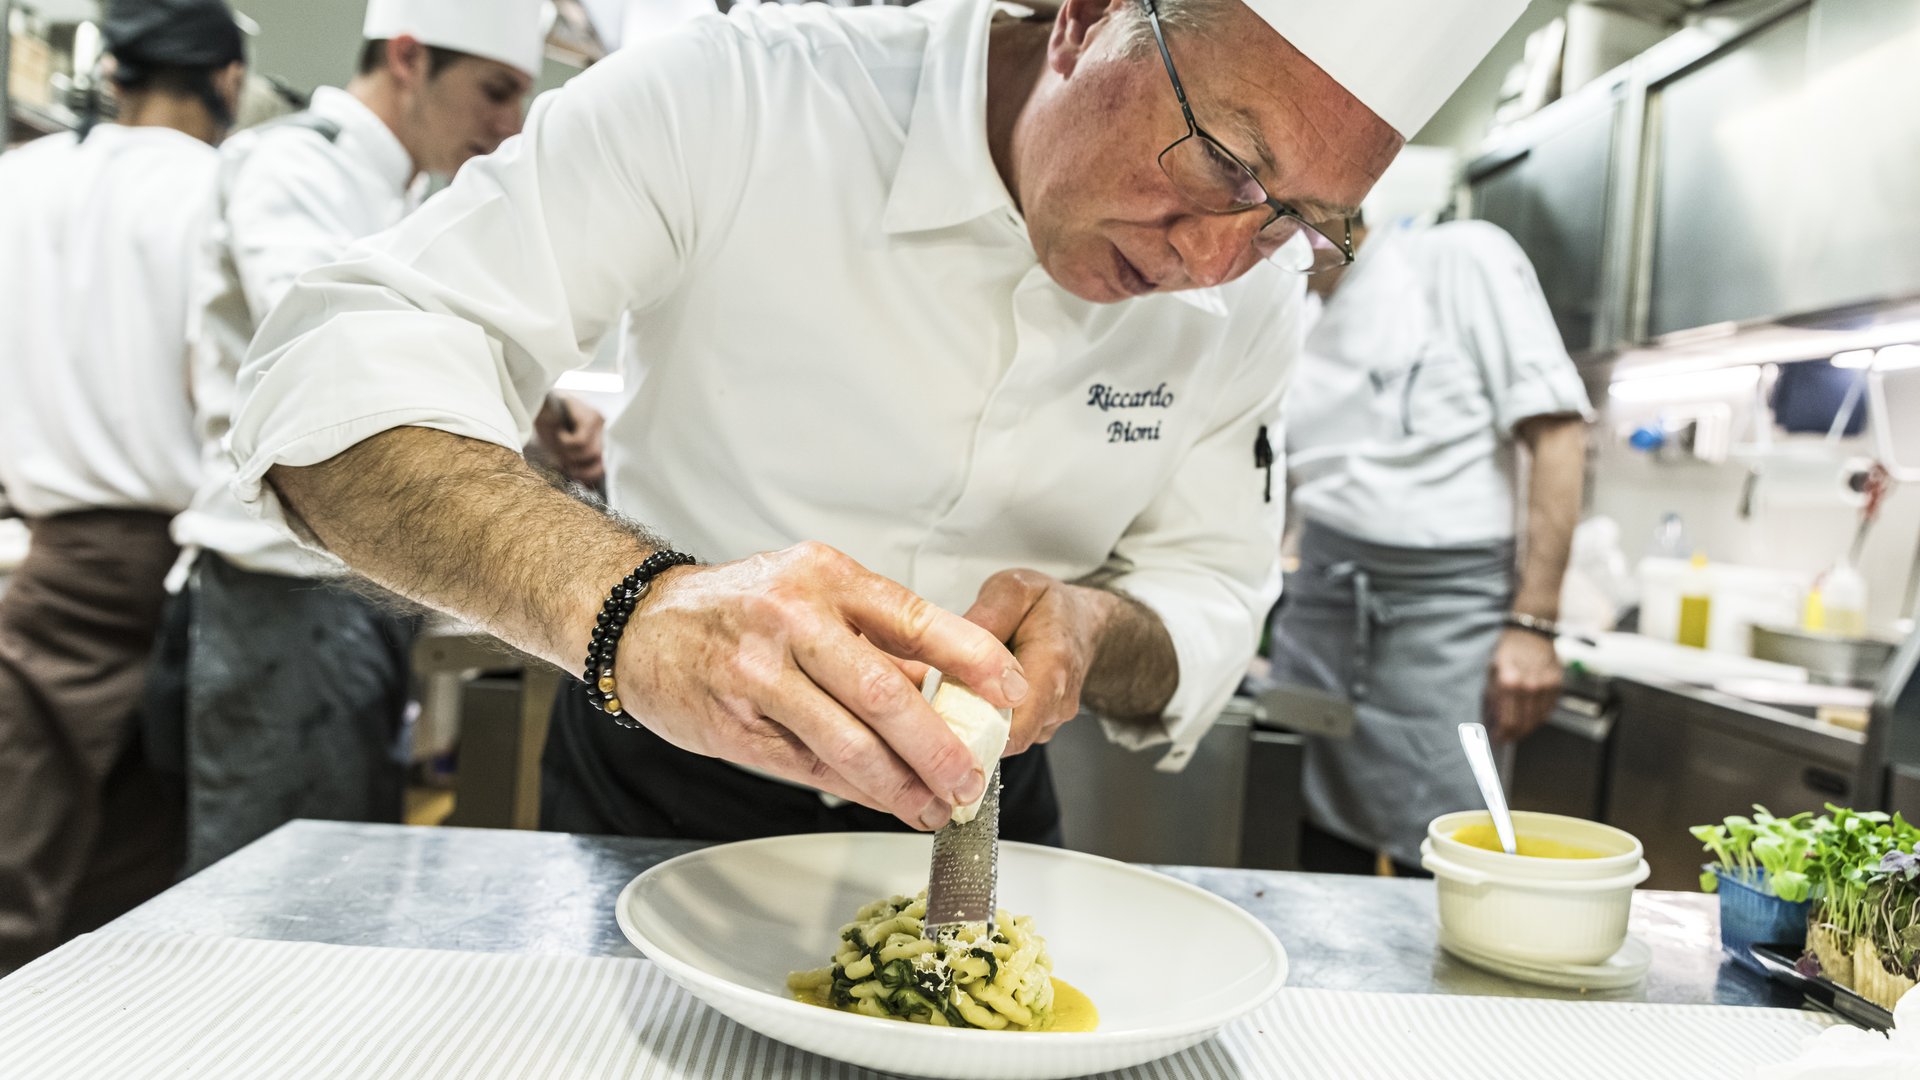 Rose & Sapori in Desenzano: our chef